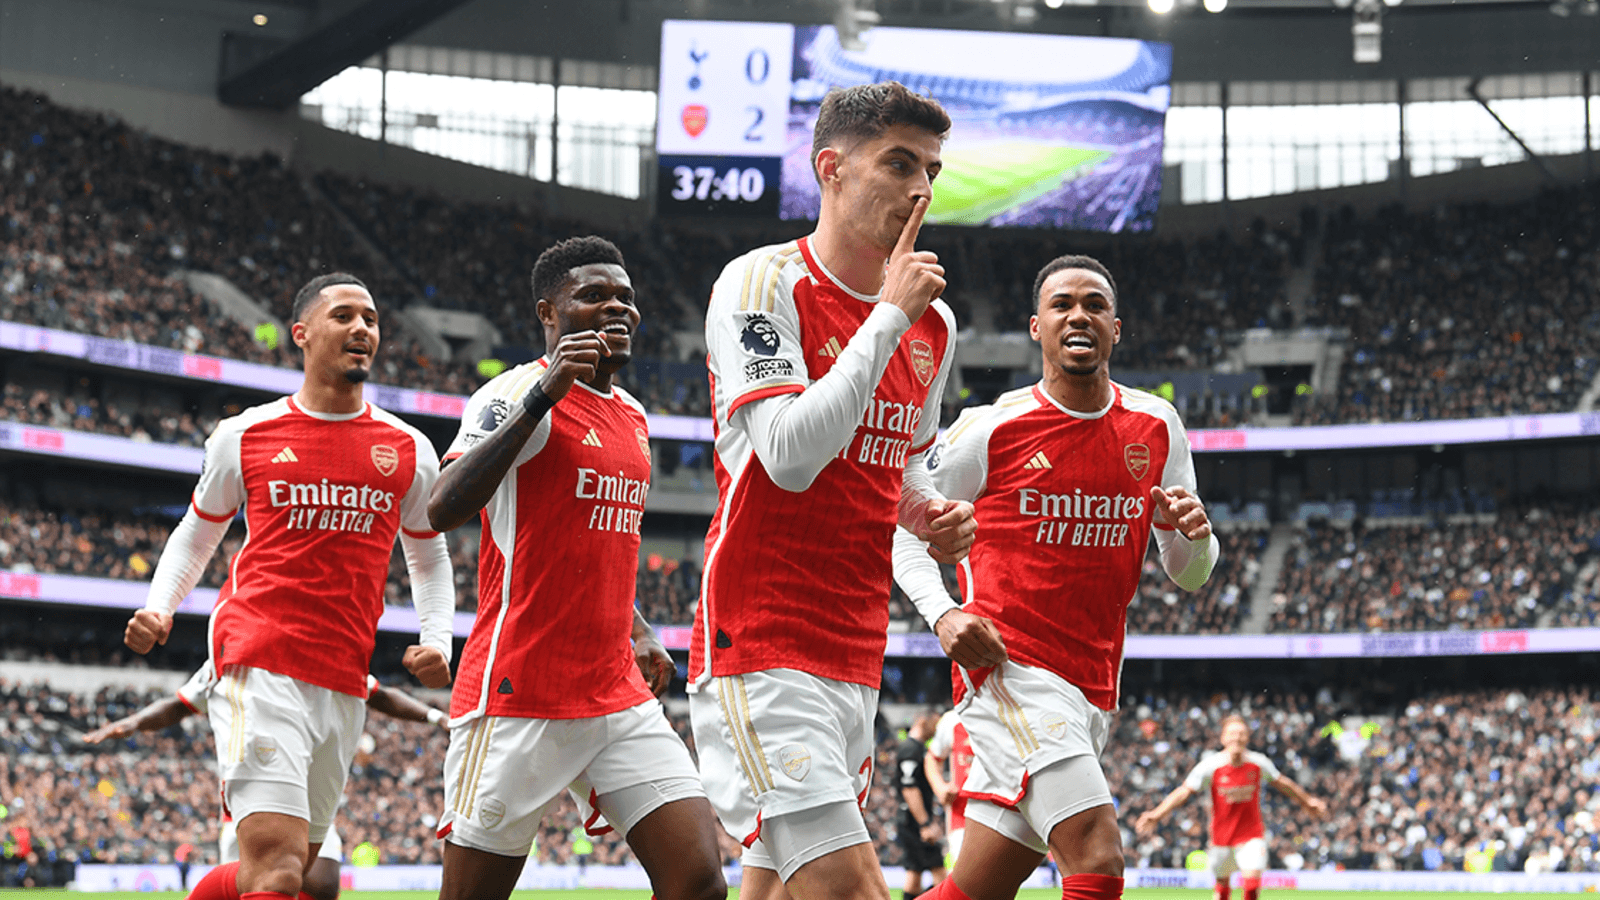 Tottenham Hotspur 2 - 3 Arsenal - Match Report | A